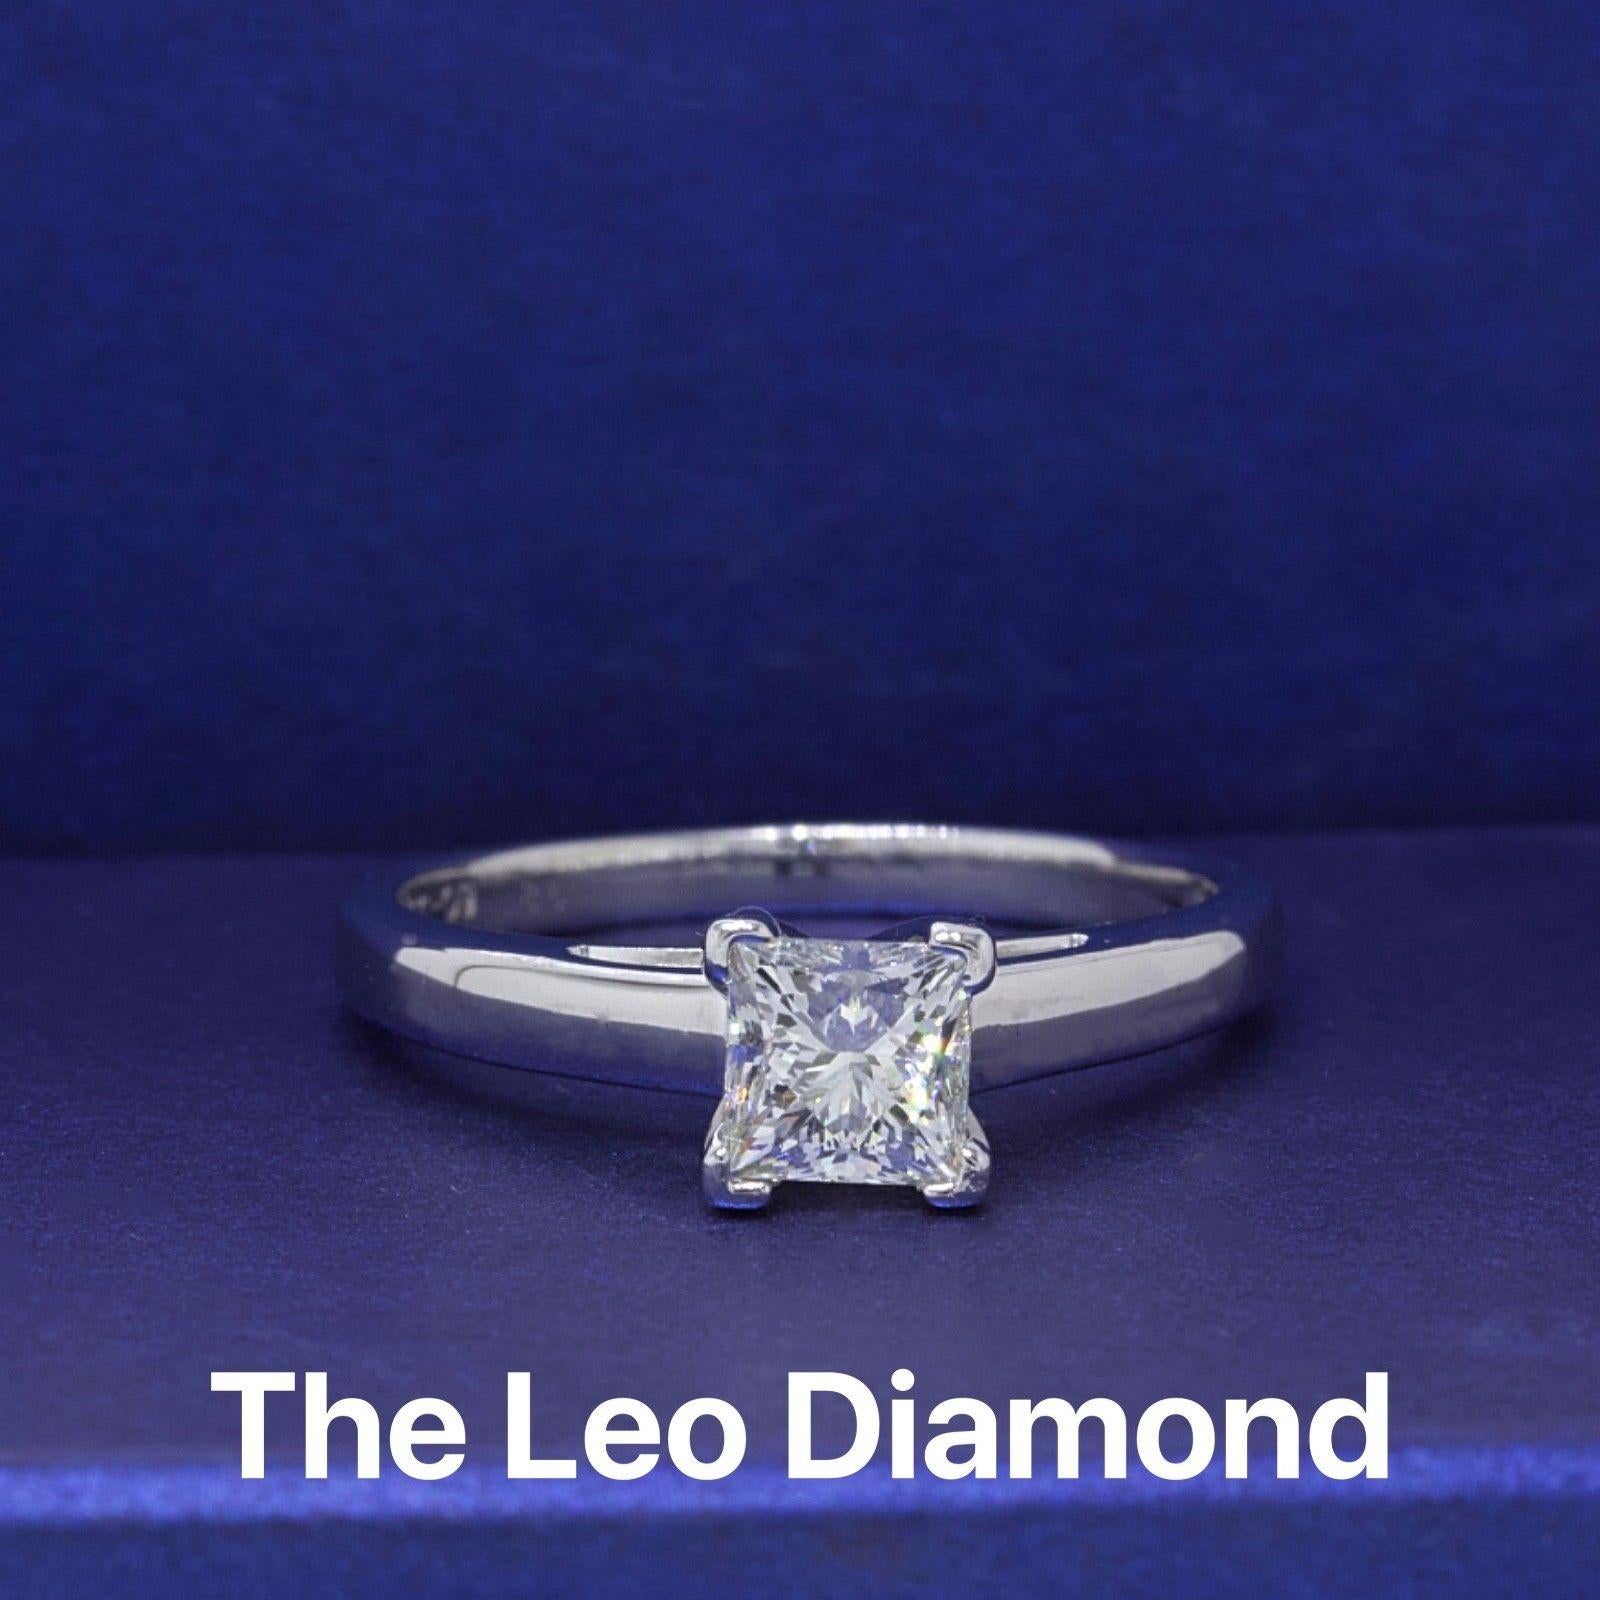 LEO DIAMOND
Style : 4 Prong Solitaire
Numéro de série : LEO 146322S
Année d'achat : 2011
Métal : or blanc 14 KT et platine 950
Taille :  7.5 - de taille importante
Poids total en carats :  0.83 CTS
Forme du diamant :  Taille princesse
Couleur et